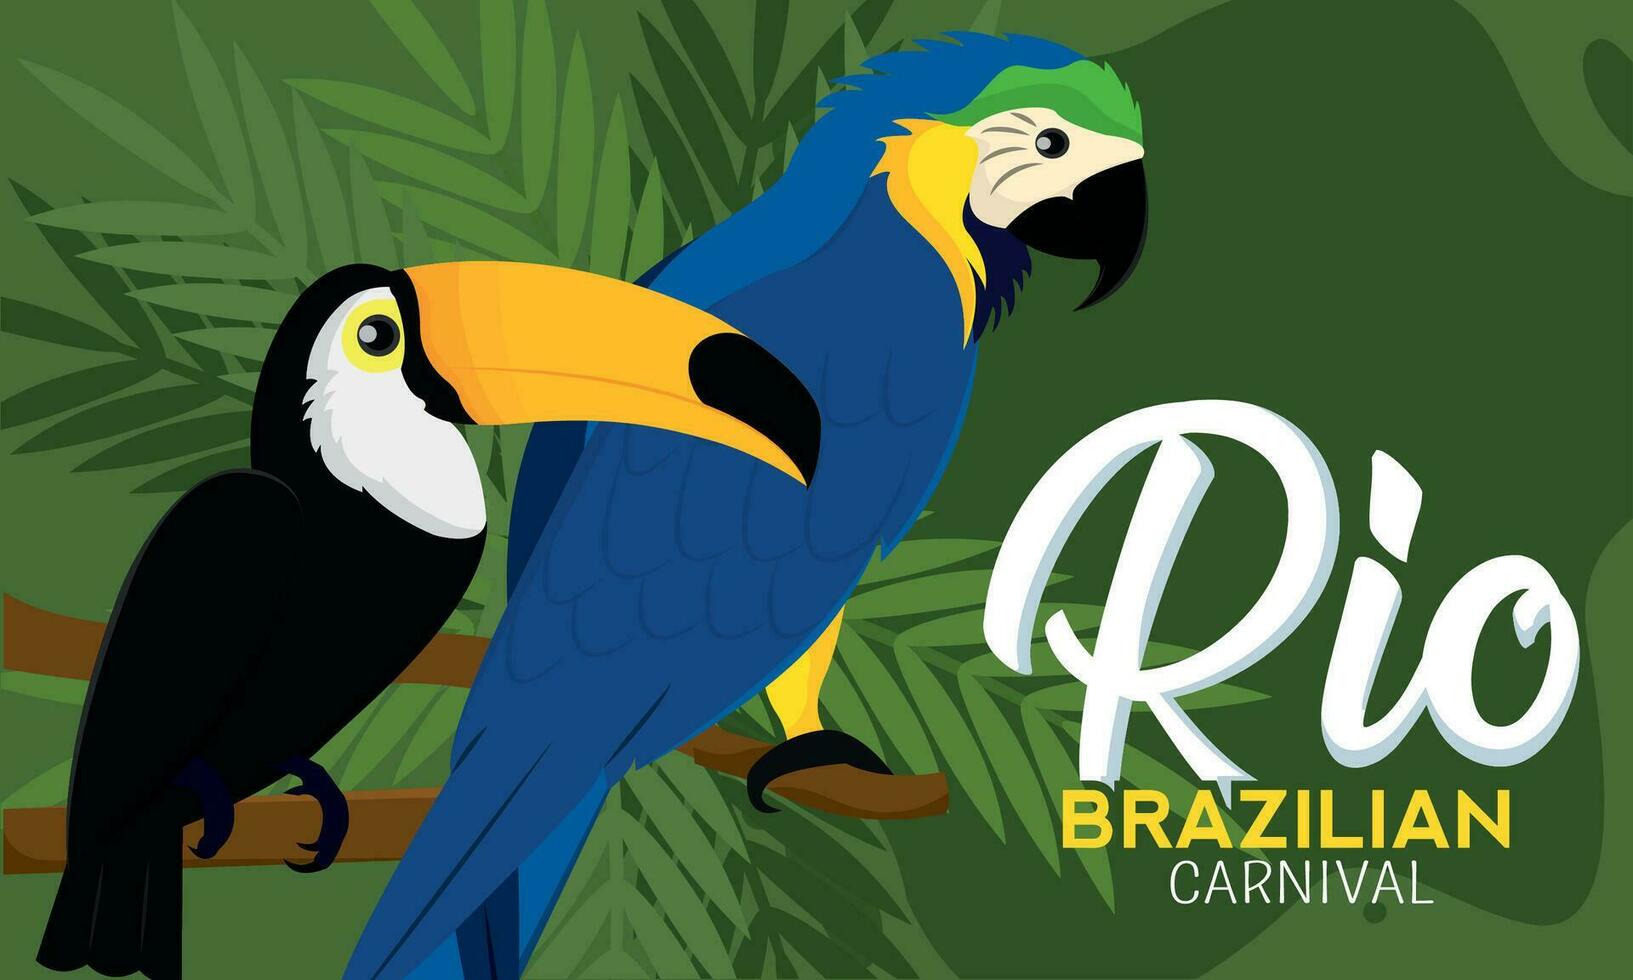 Tropical toucan and parrot Rio de Janeiro Carnival poster Vector